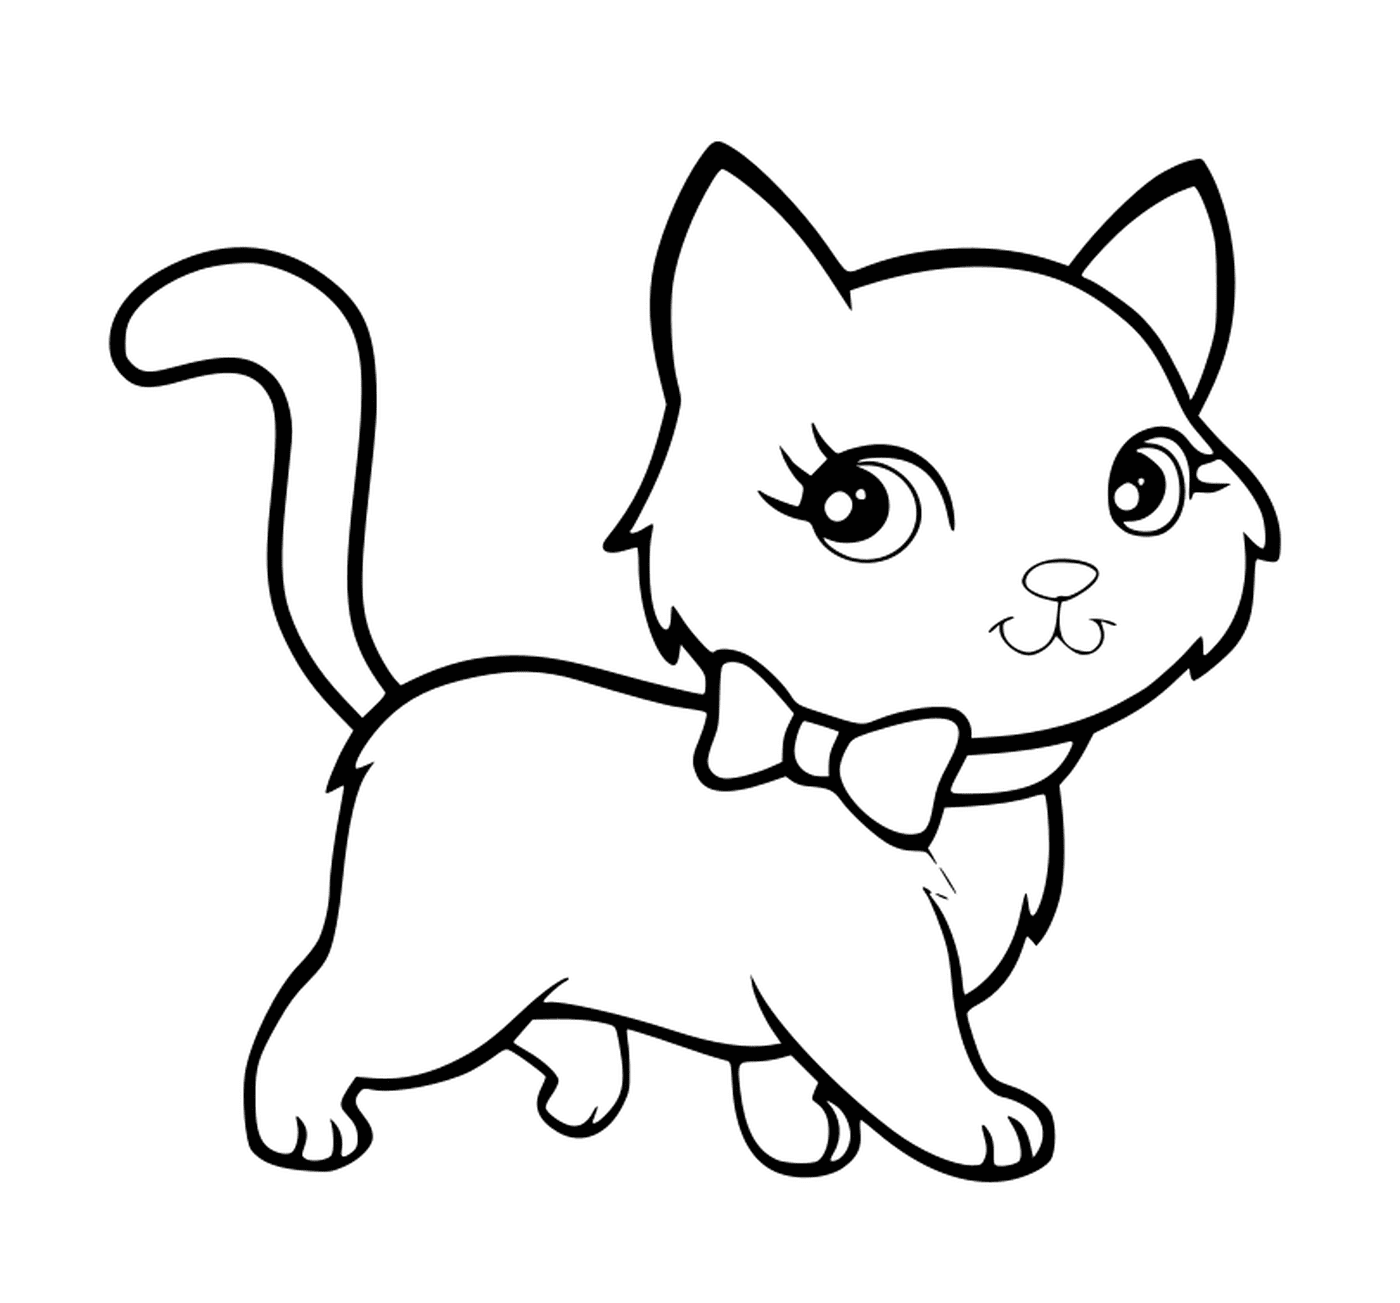  Un gattino kawaii super carino che lavora con eleganza 